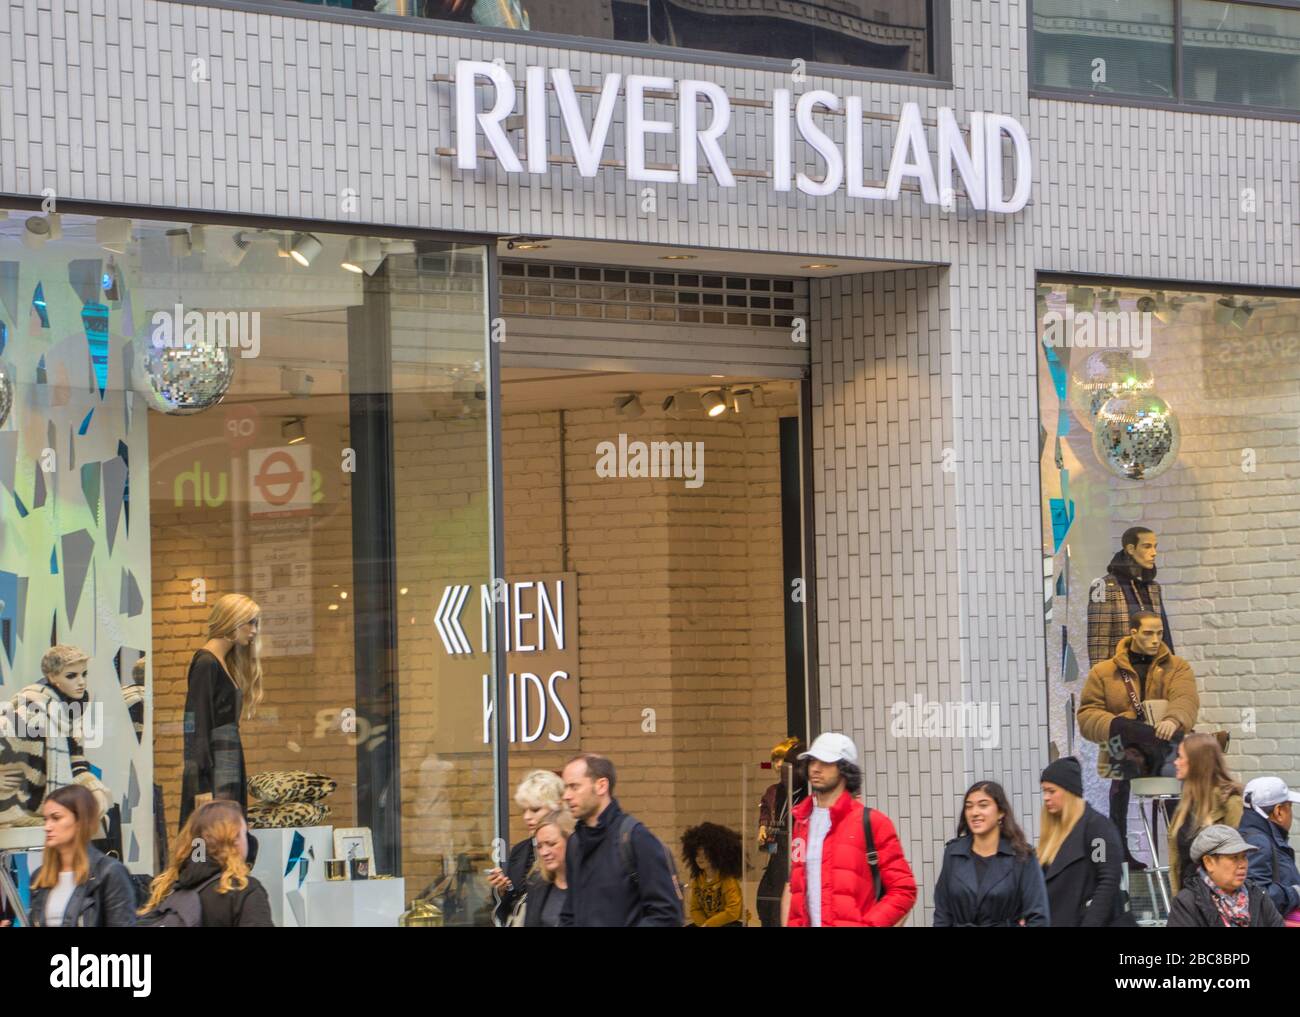 River Island - britische High-Street-Modemarke - Außenlogo/Beschilderung - London Stockfoto